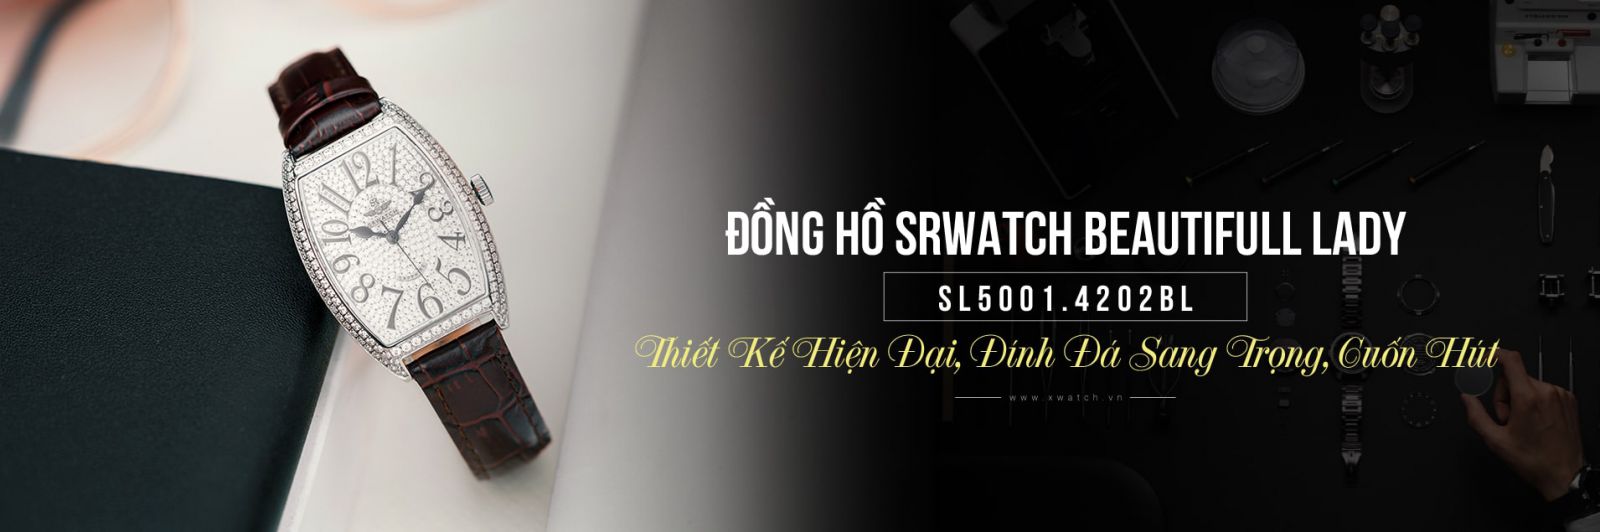 Đồng hồ Srwatch nữ SL5001.4202BL